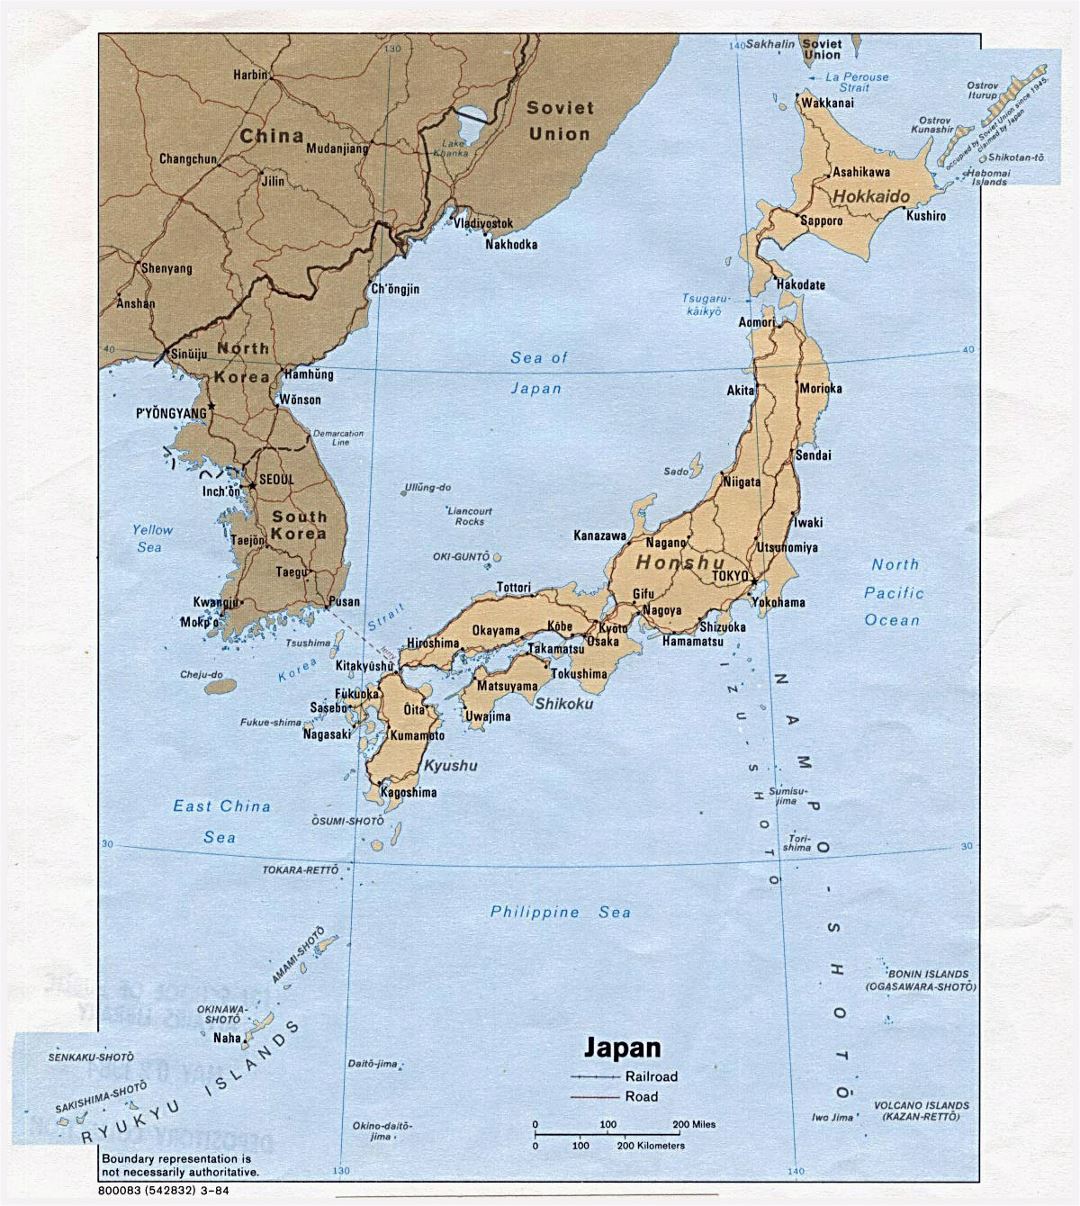 Detallado mapa político de Japón con carreteras, ferrocarriles y principales ciudades - 1984